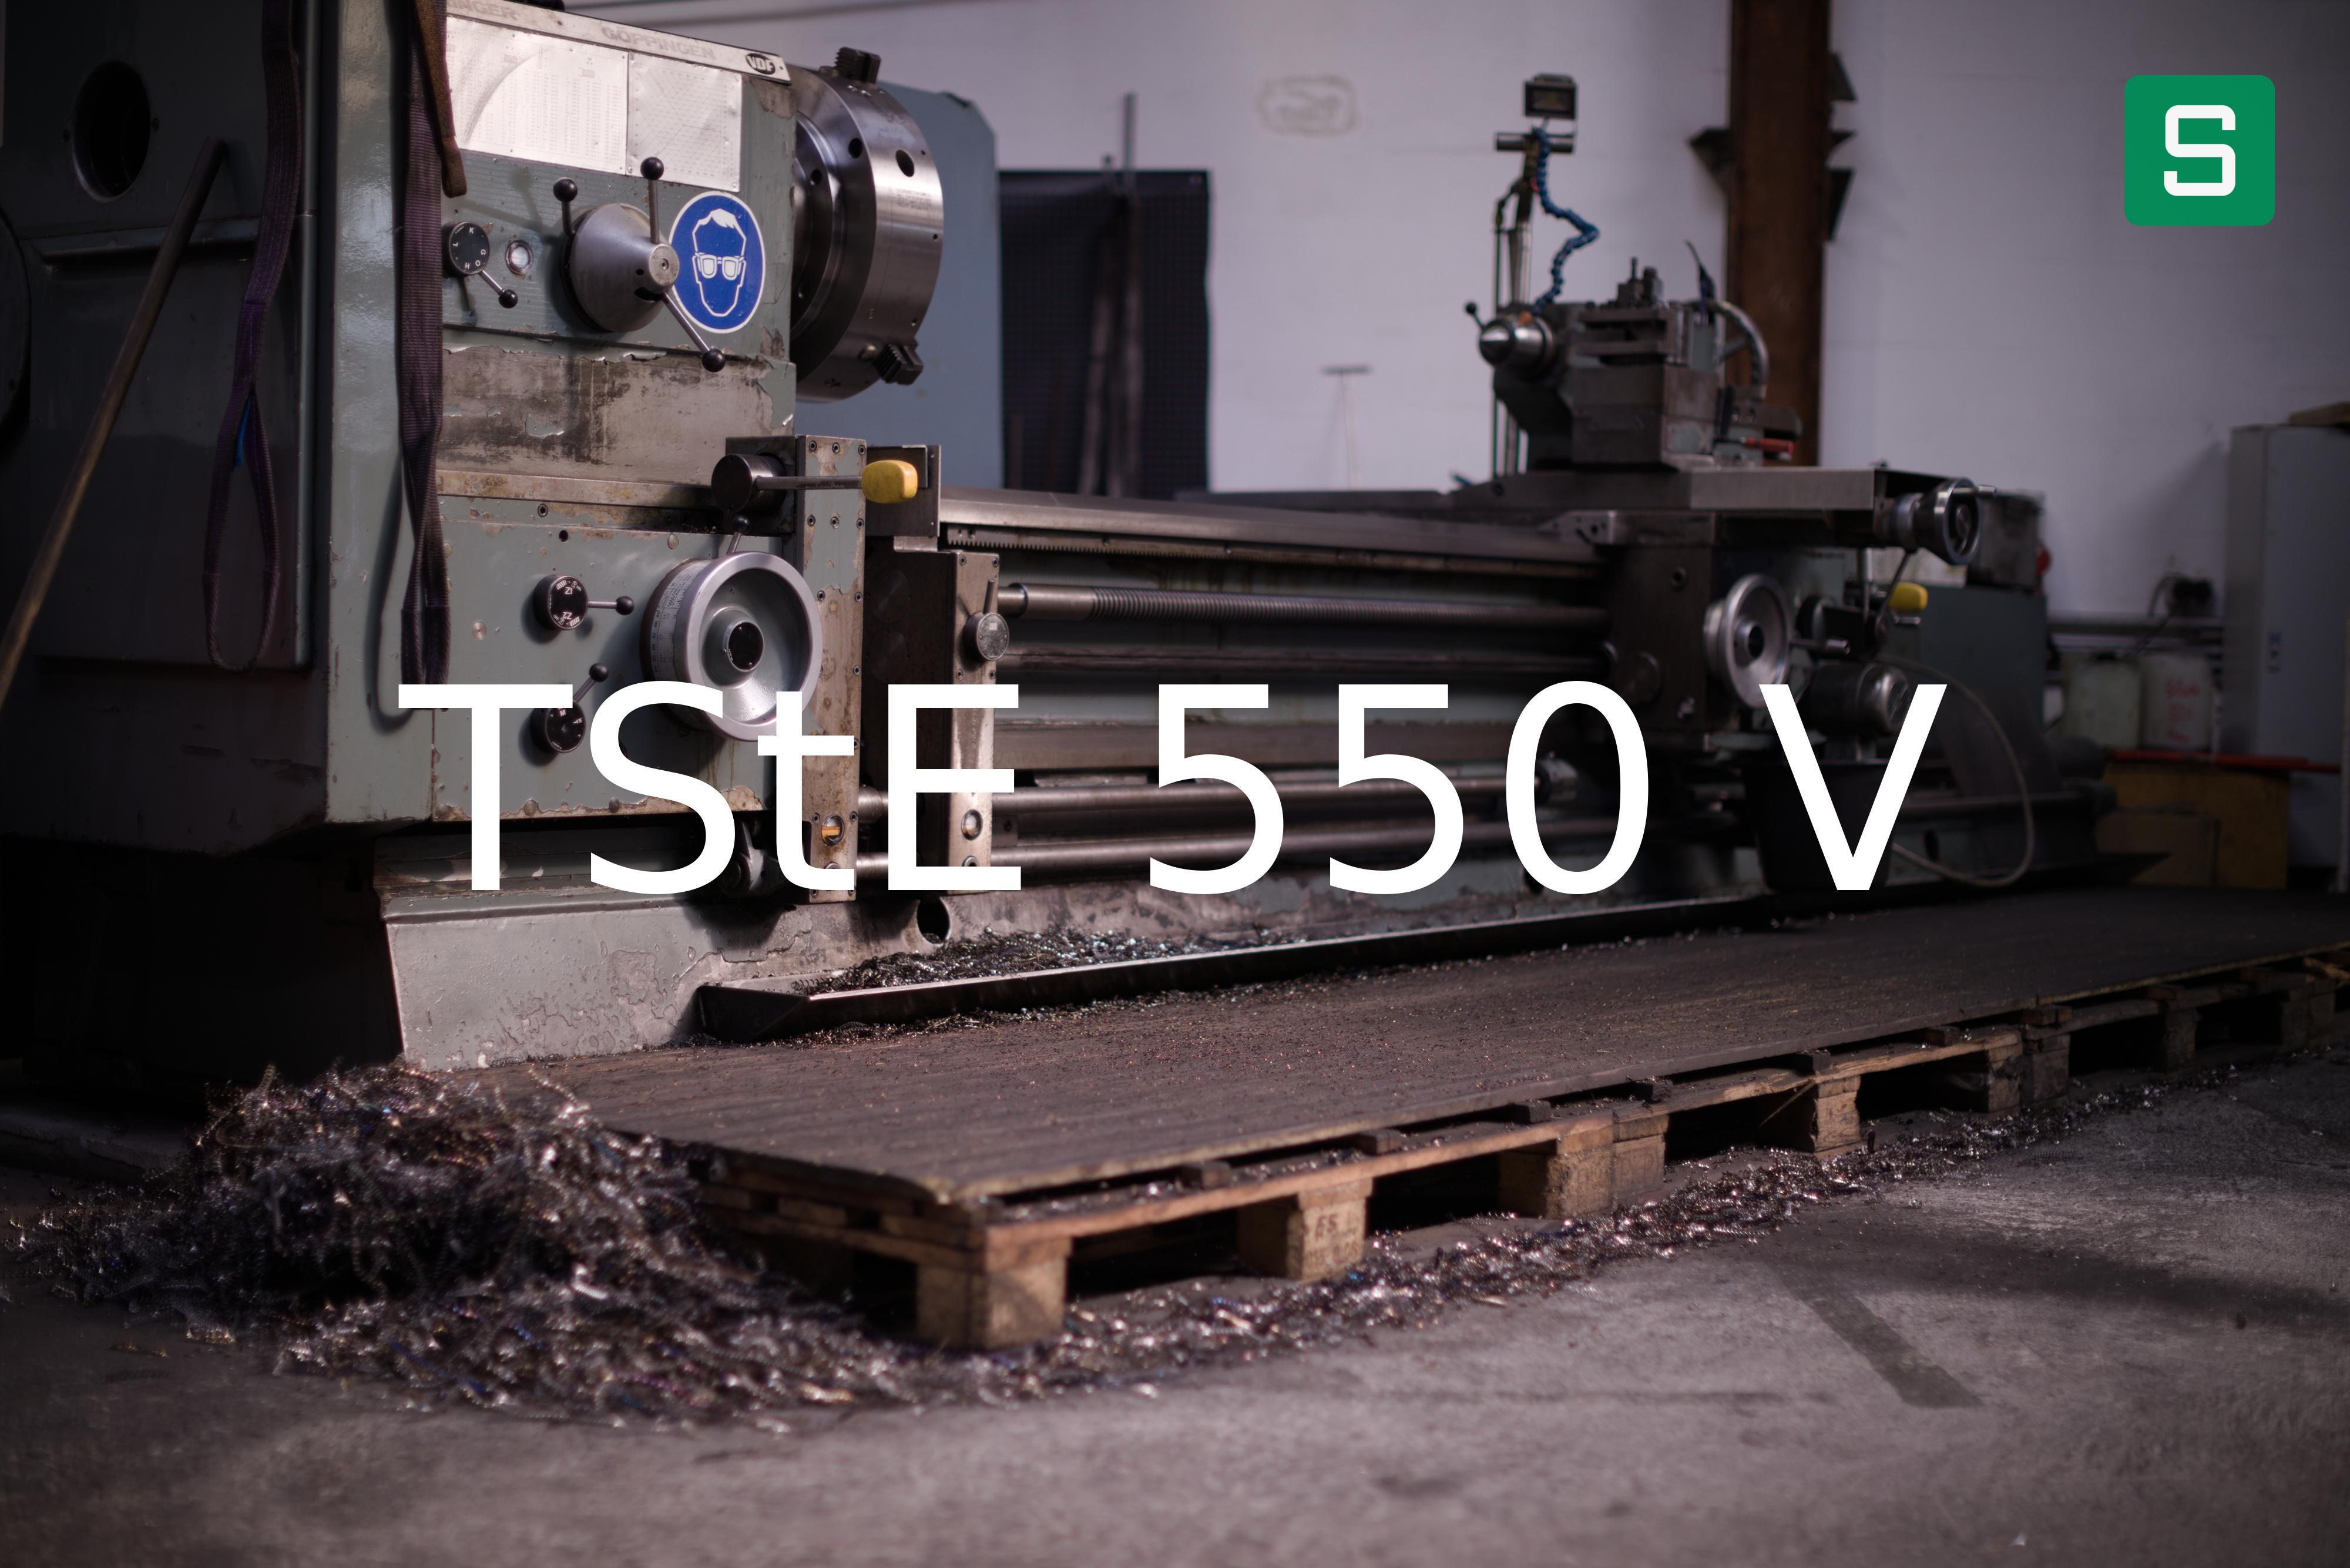 Steel Material: TStE 550 V